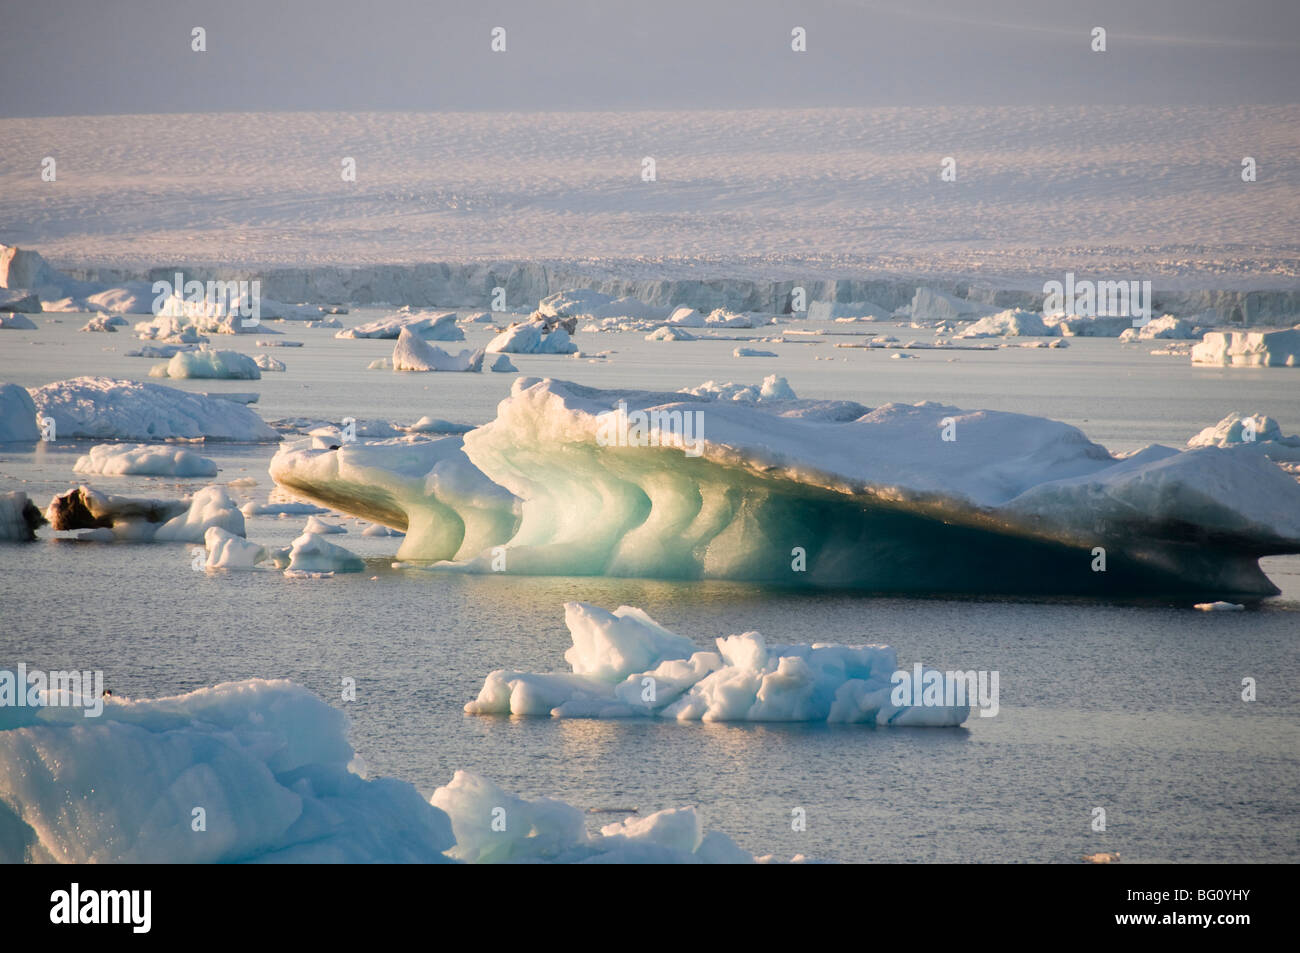 Ice in the Antarctic Sound, Antarctic Peninsula, Antarctica, Polar Regions Stock Photo